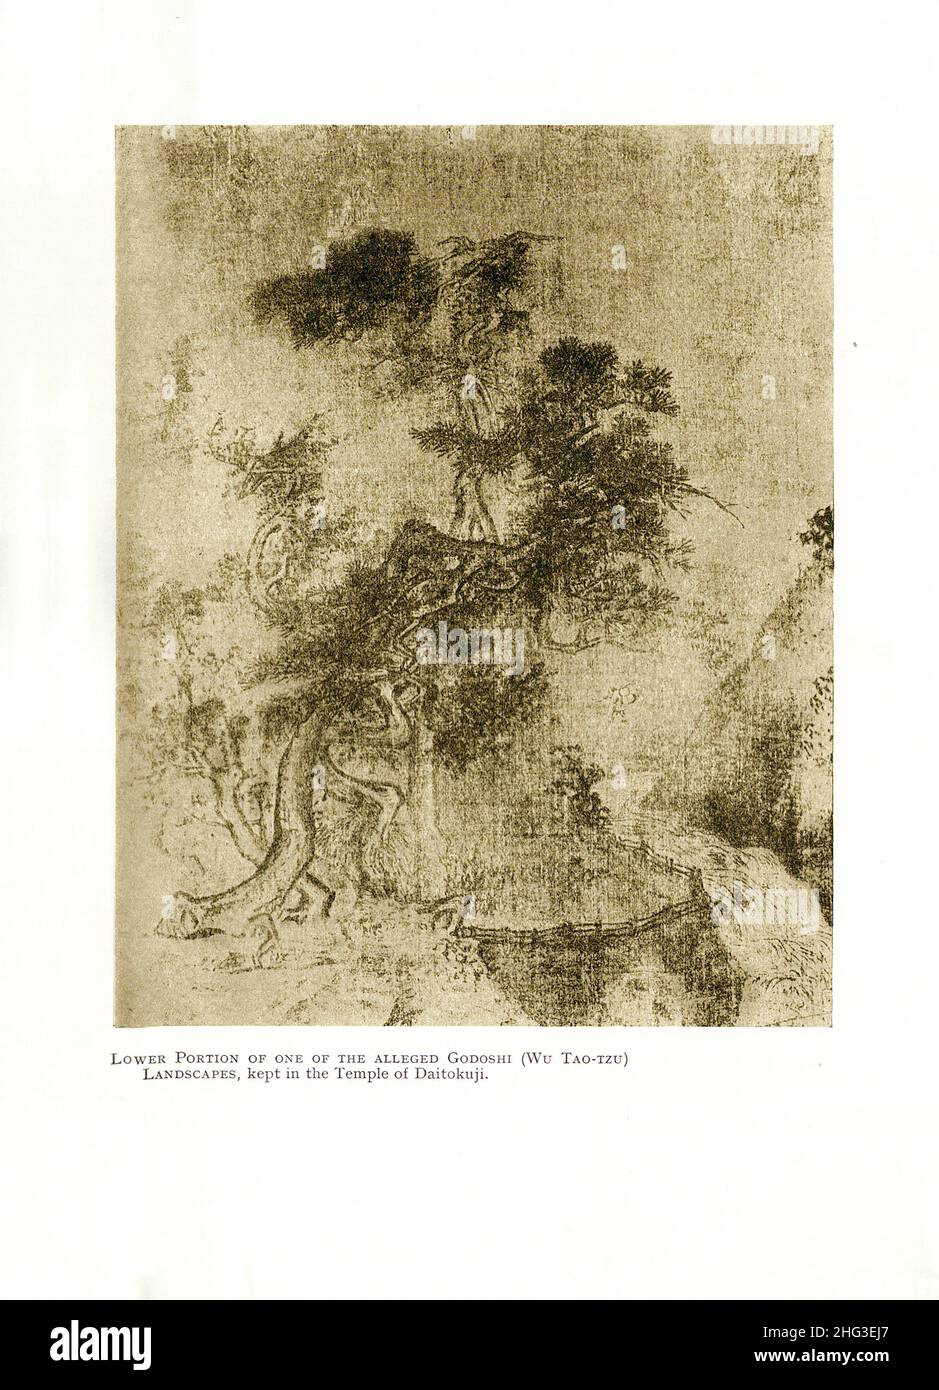 Art de la Chine, chanson du nord.Partie inférieure de l'un des présumés Godoshi (Wu Tao-Tzu).Paysages millésimés, conservés dans le temple de Daitoku-ji (temple de Banque D'Images